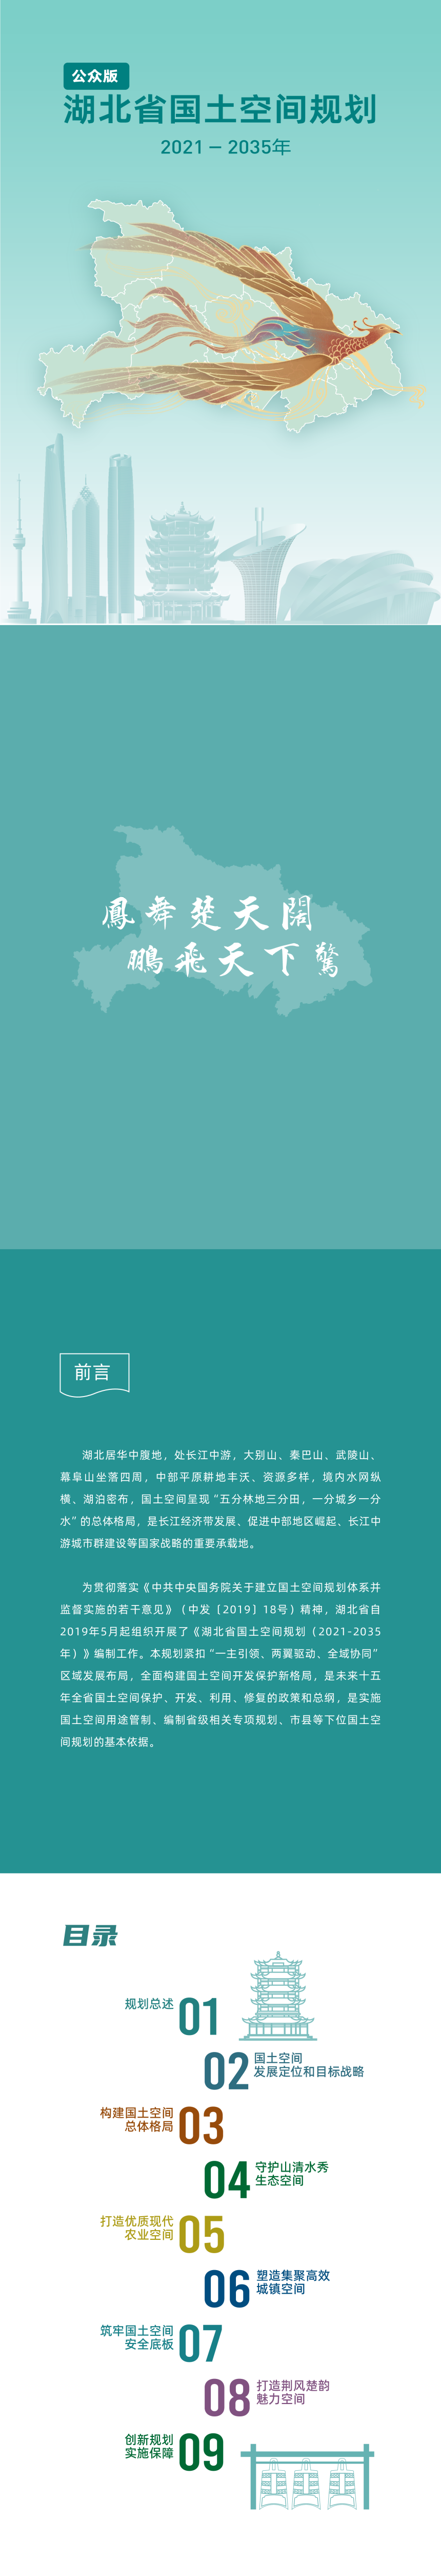 湖北省国土空间规划（2021-2035年）-1